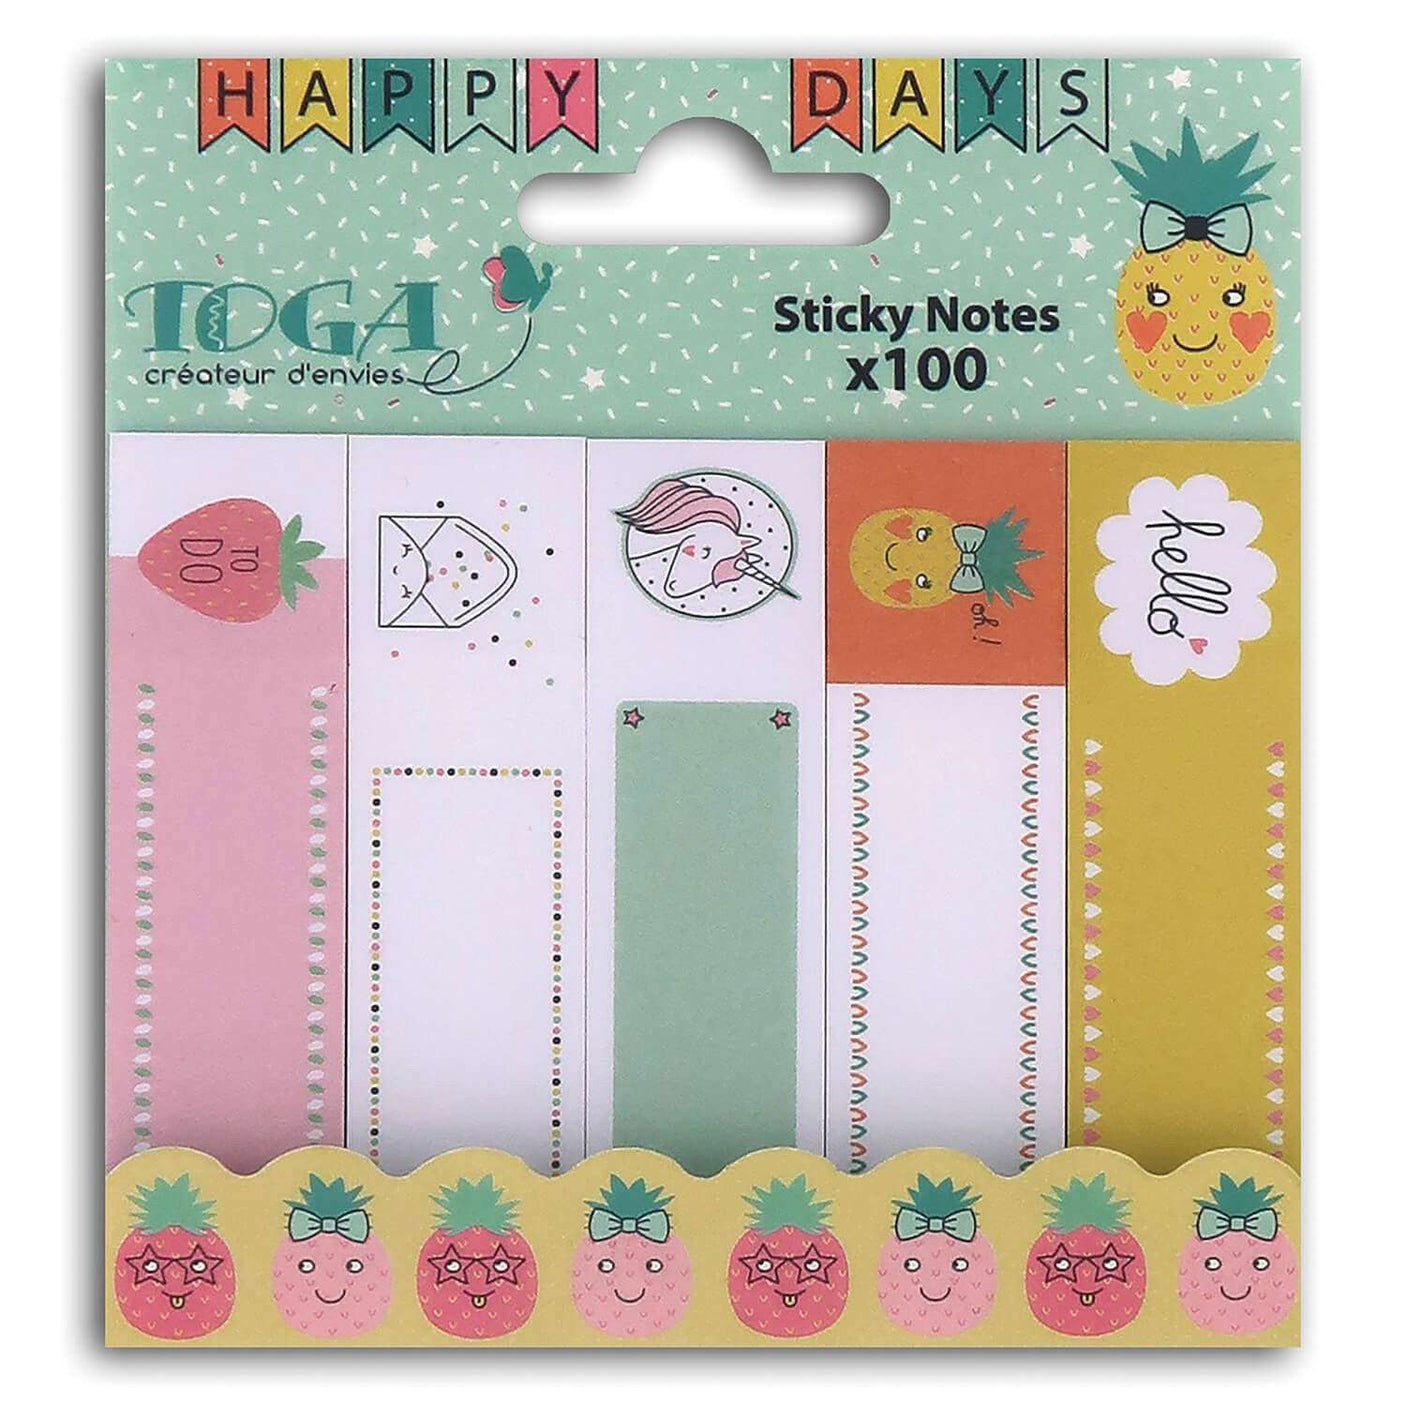 100 sticky notes Happy days